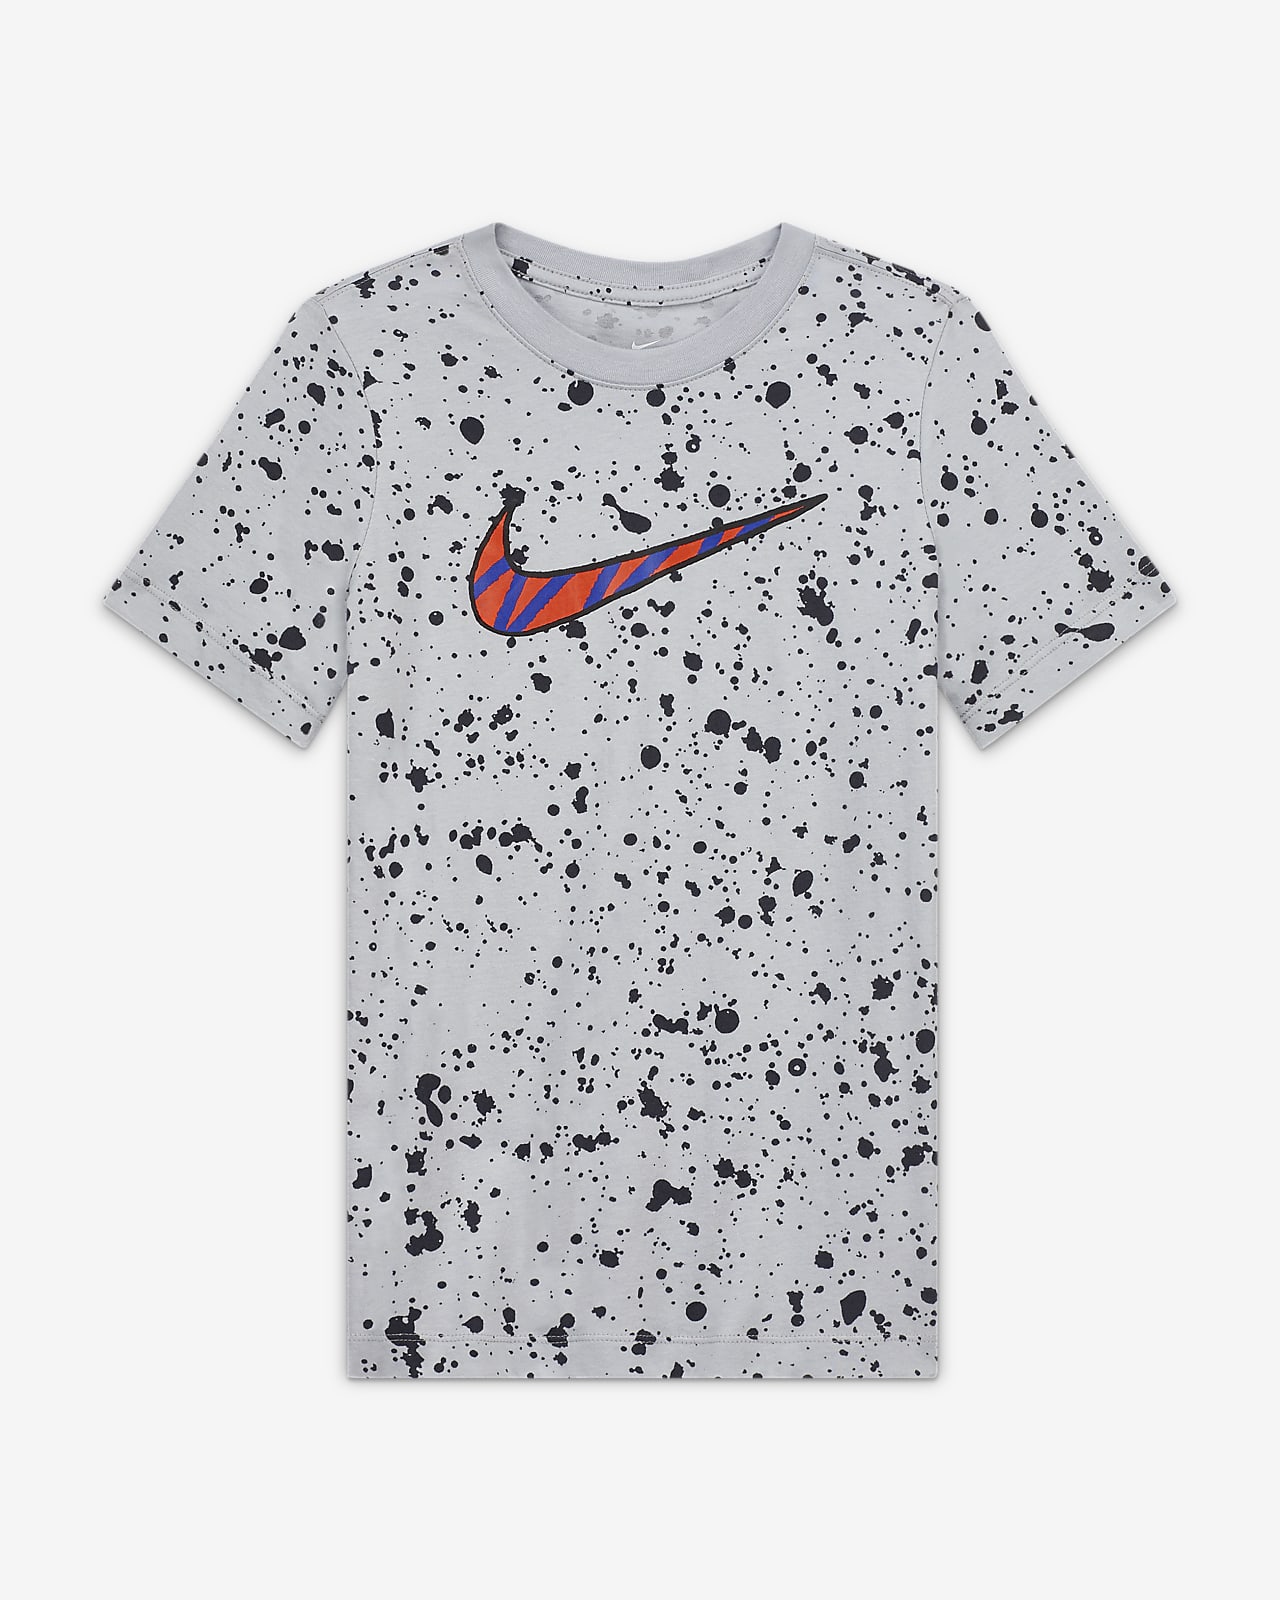 Nike Sportswear Big Kids' (Boys') Printed TShirt.